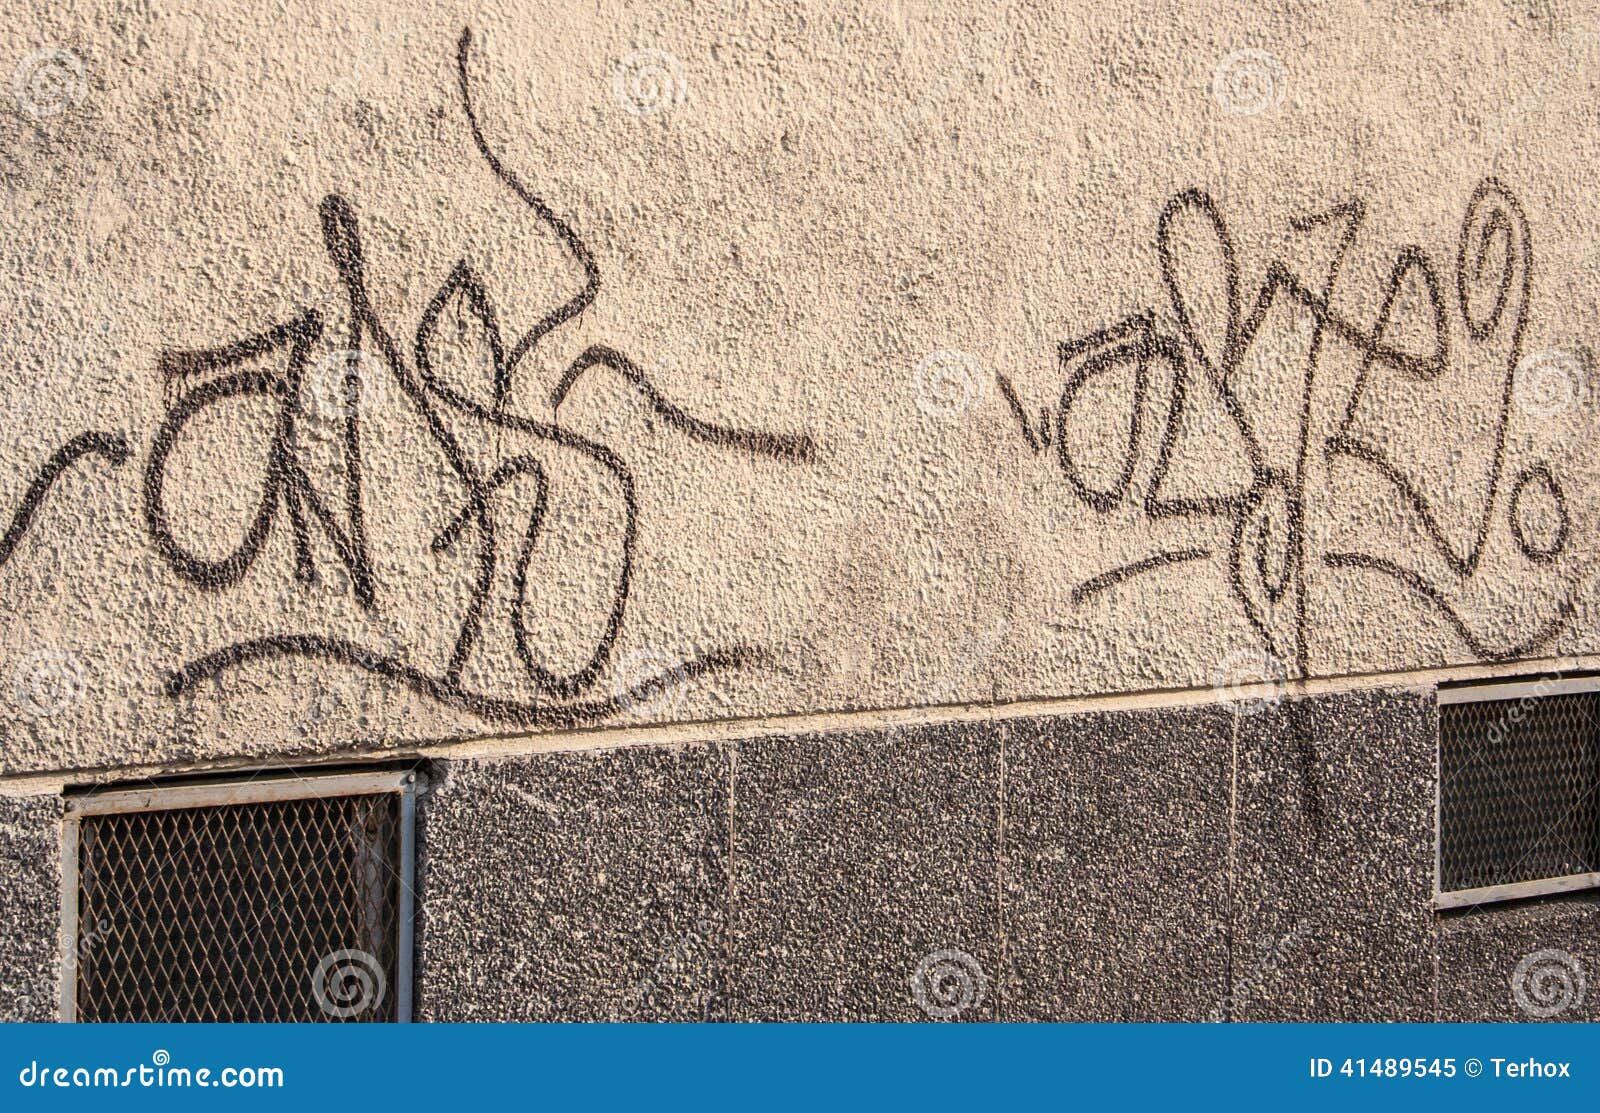 Grafitti på sida av byggnad. Grafitti på sidan eller den yttre väggen av en byggnad